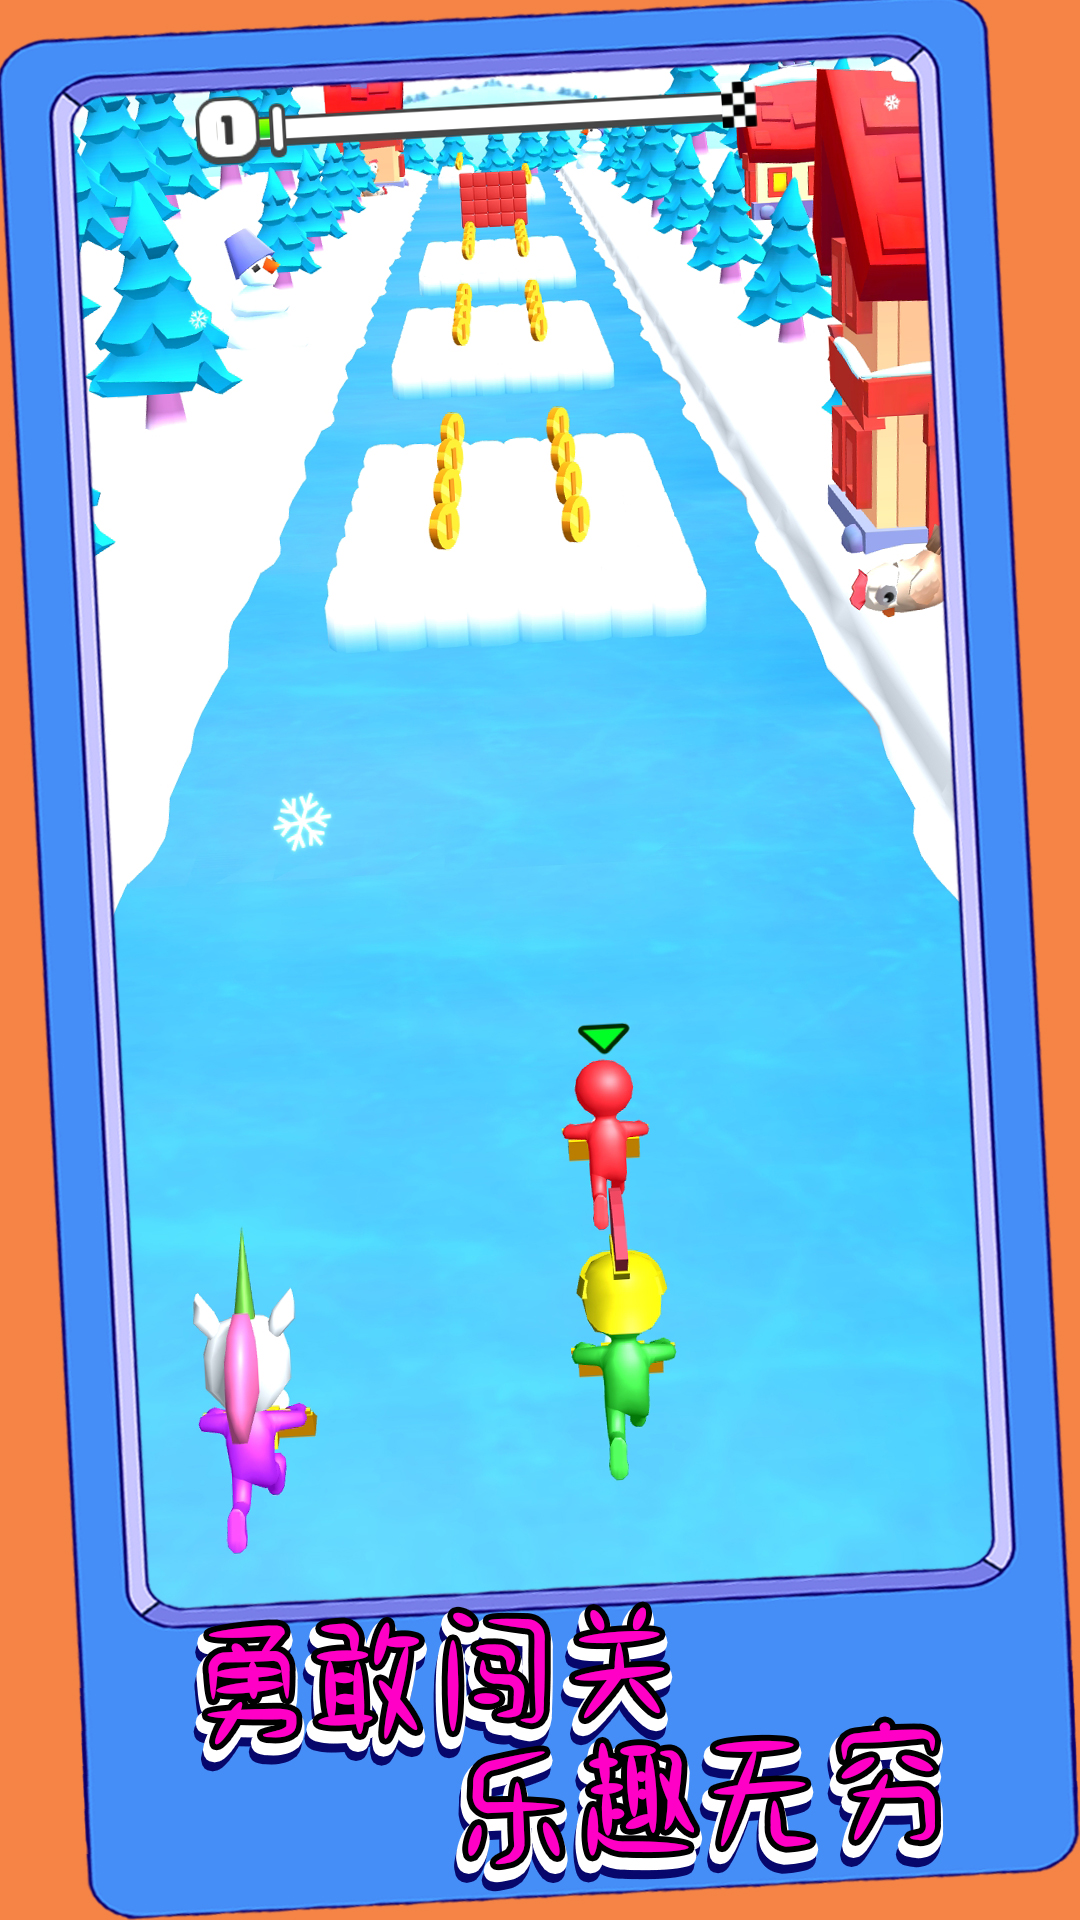 冒险也要闯一闯 v1.0.3-是一款冒险滚雪球跑酷游戏